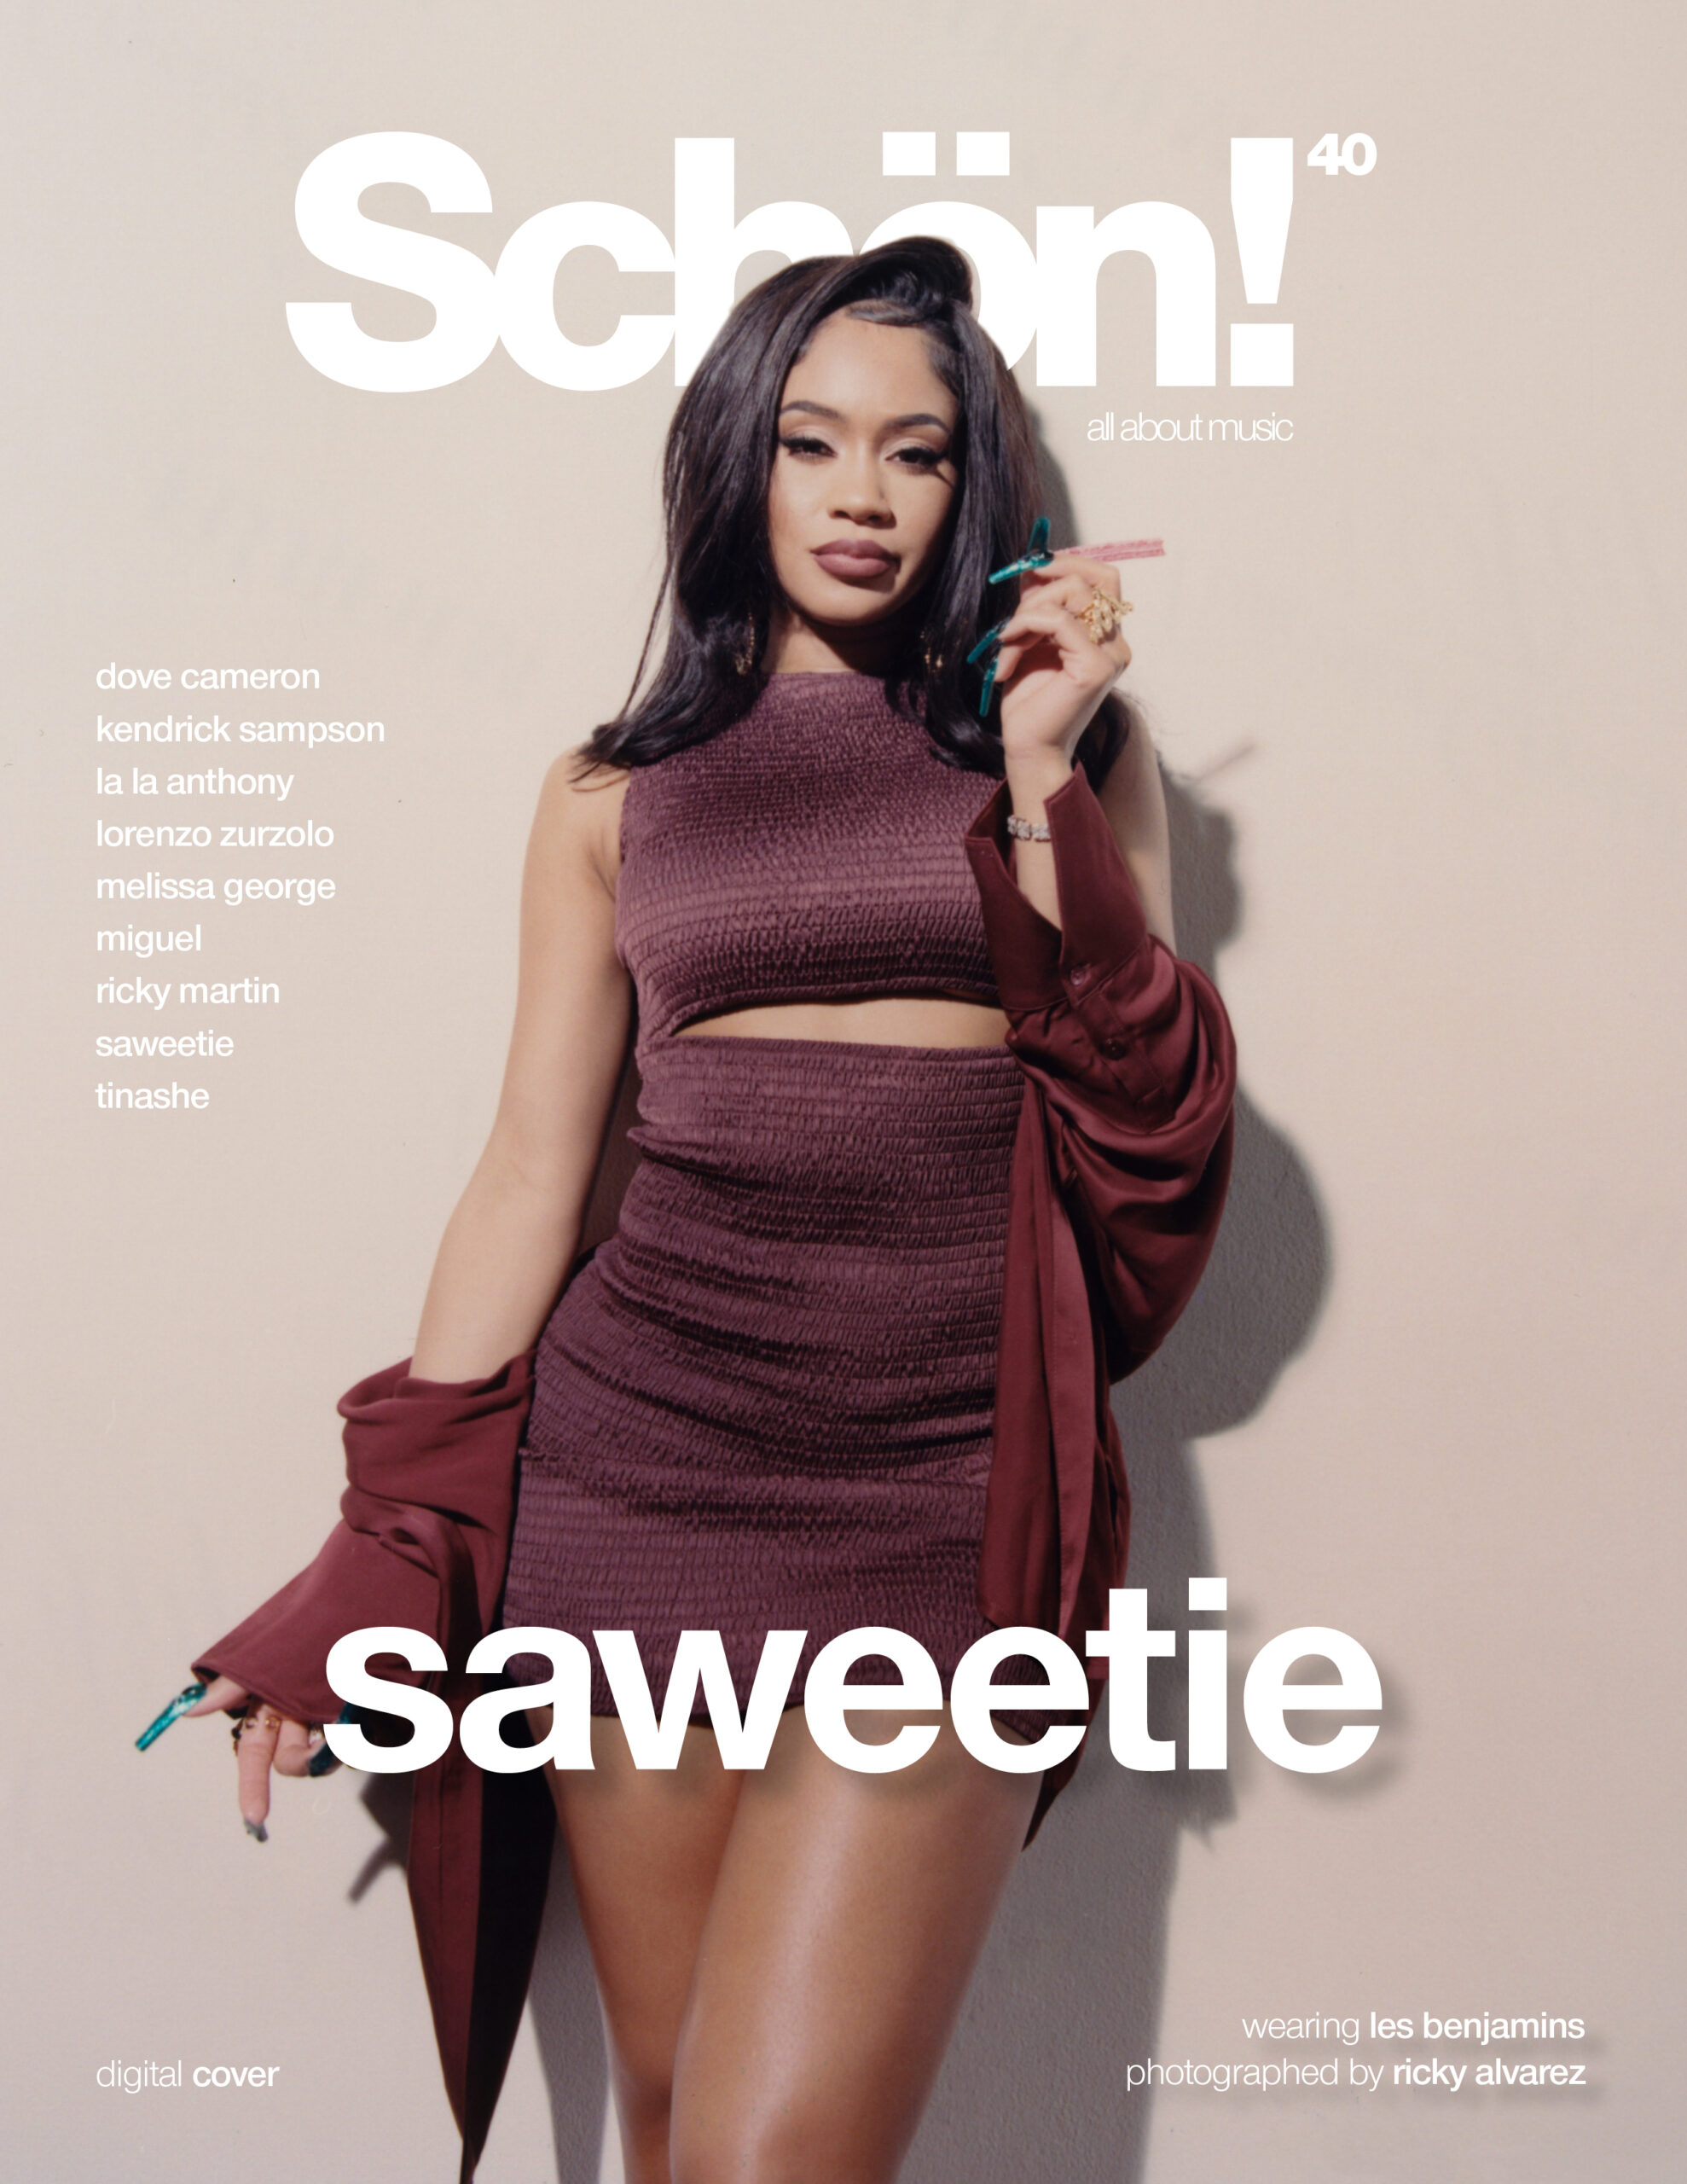 Schön! 40 digital cover  saweetie – Schön! Magazine